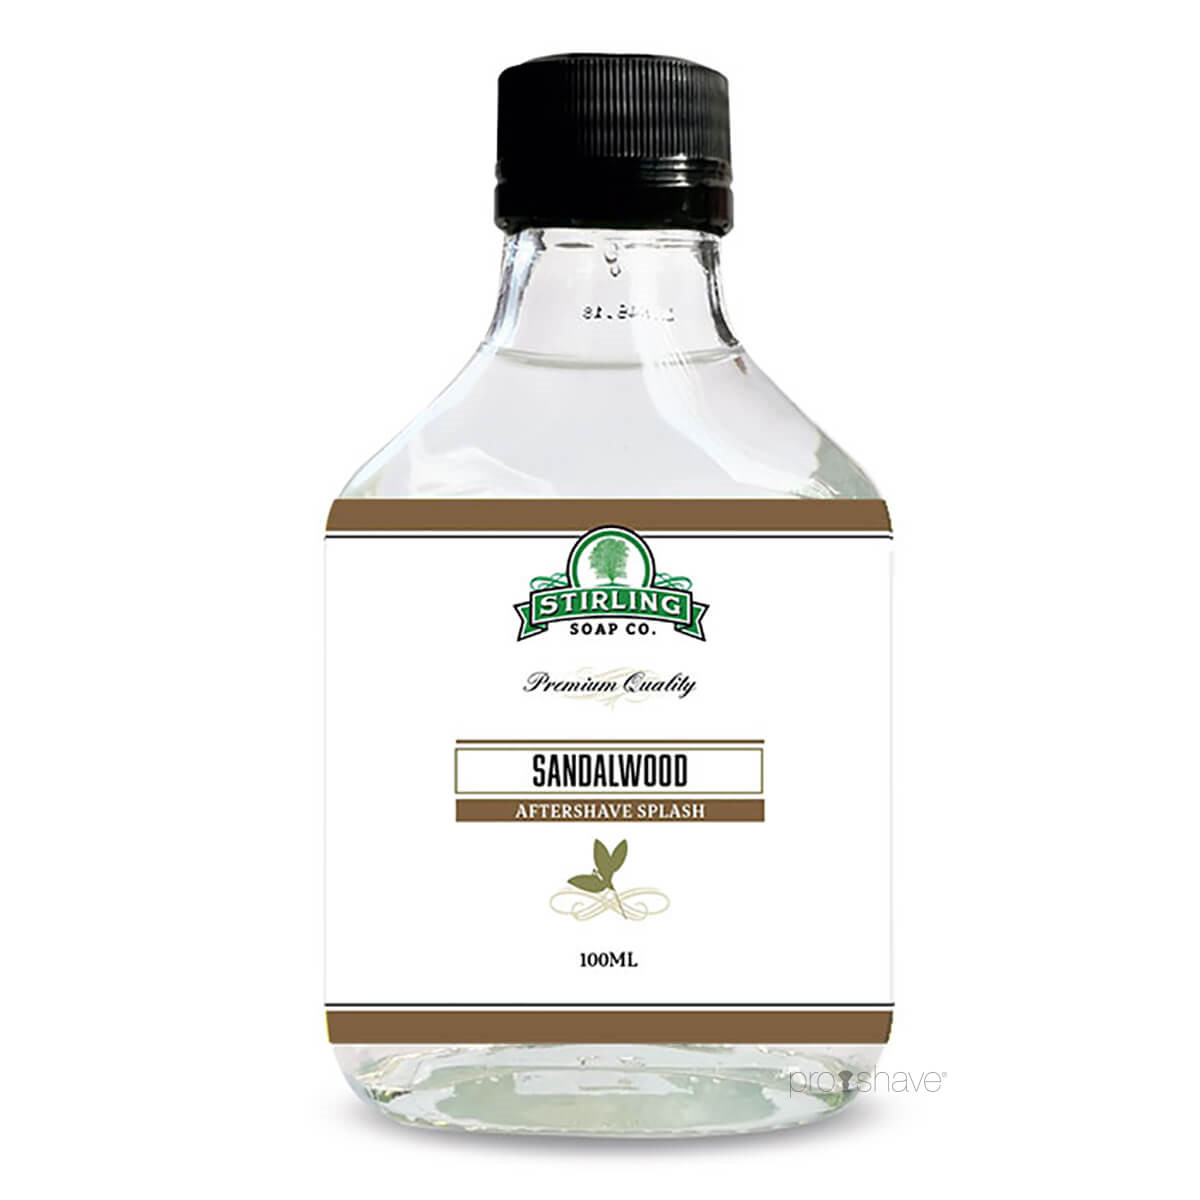 Stirling Soap Co. Aftershave Splash, Sandalwood, 100 ml.